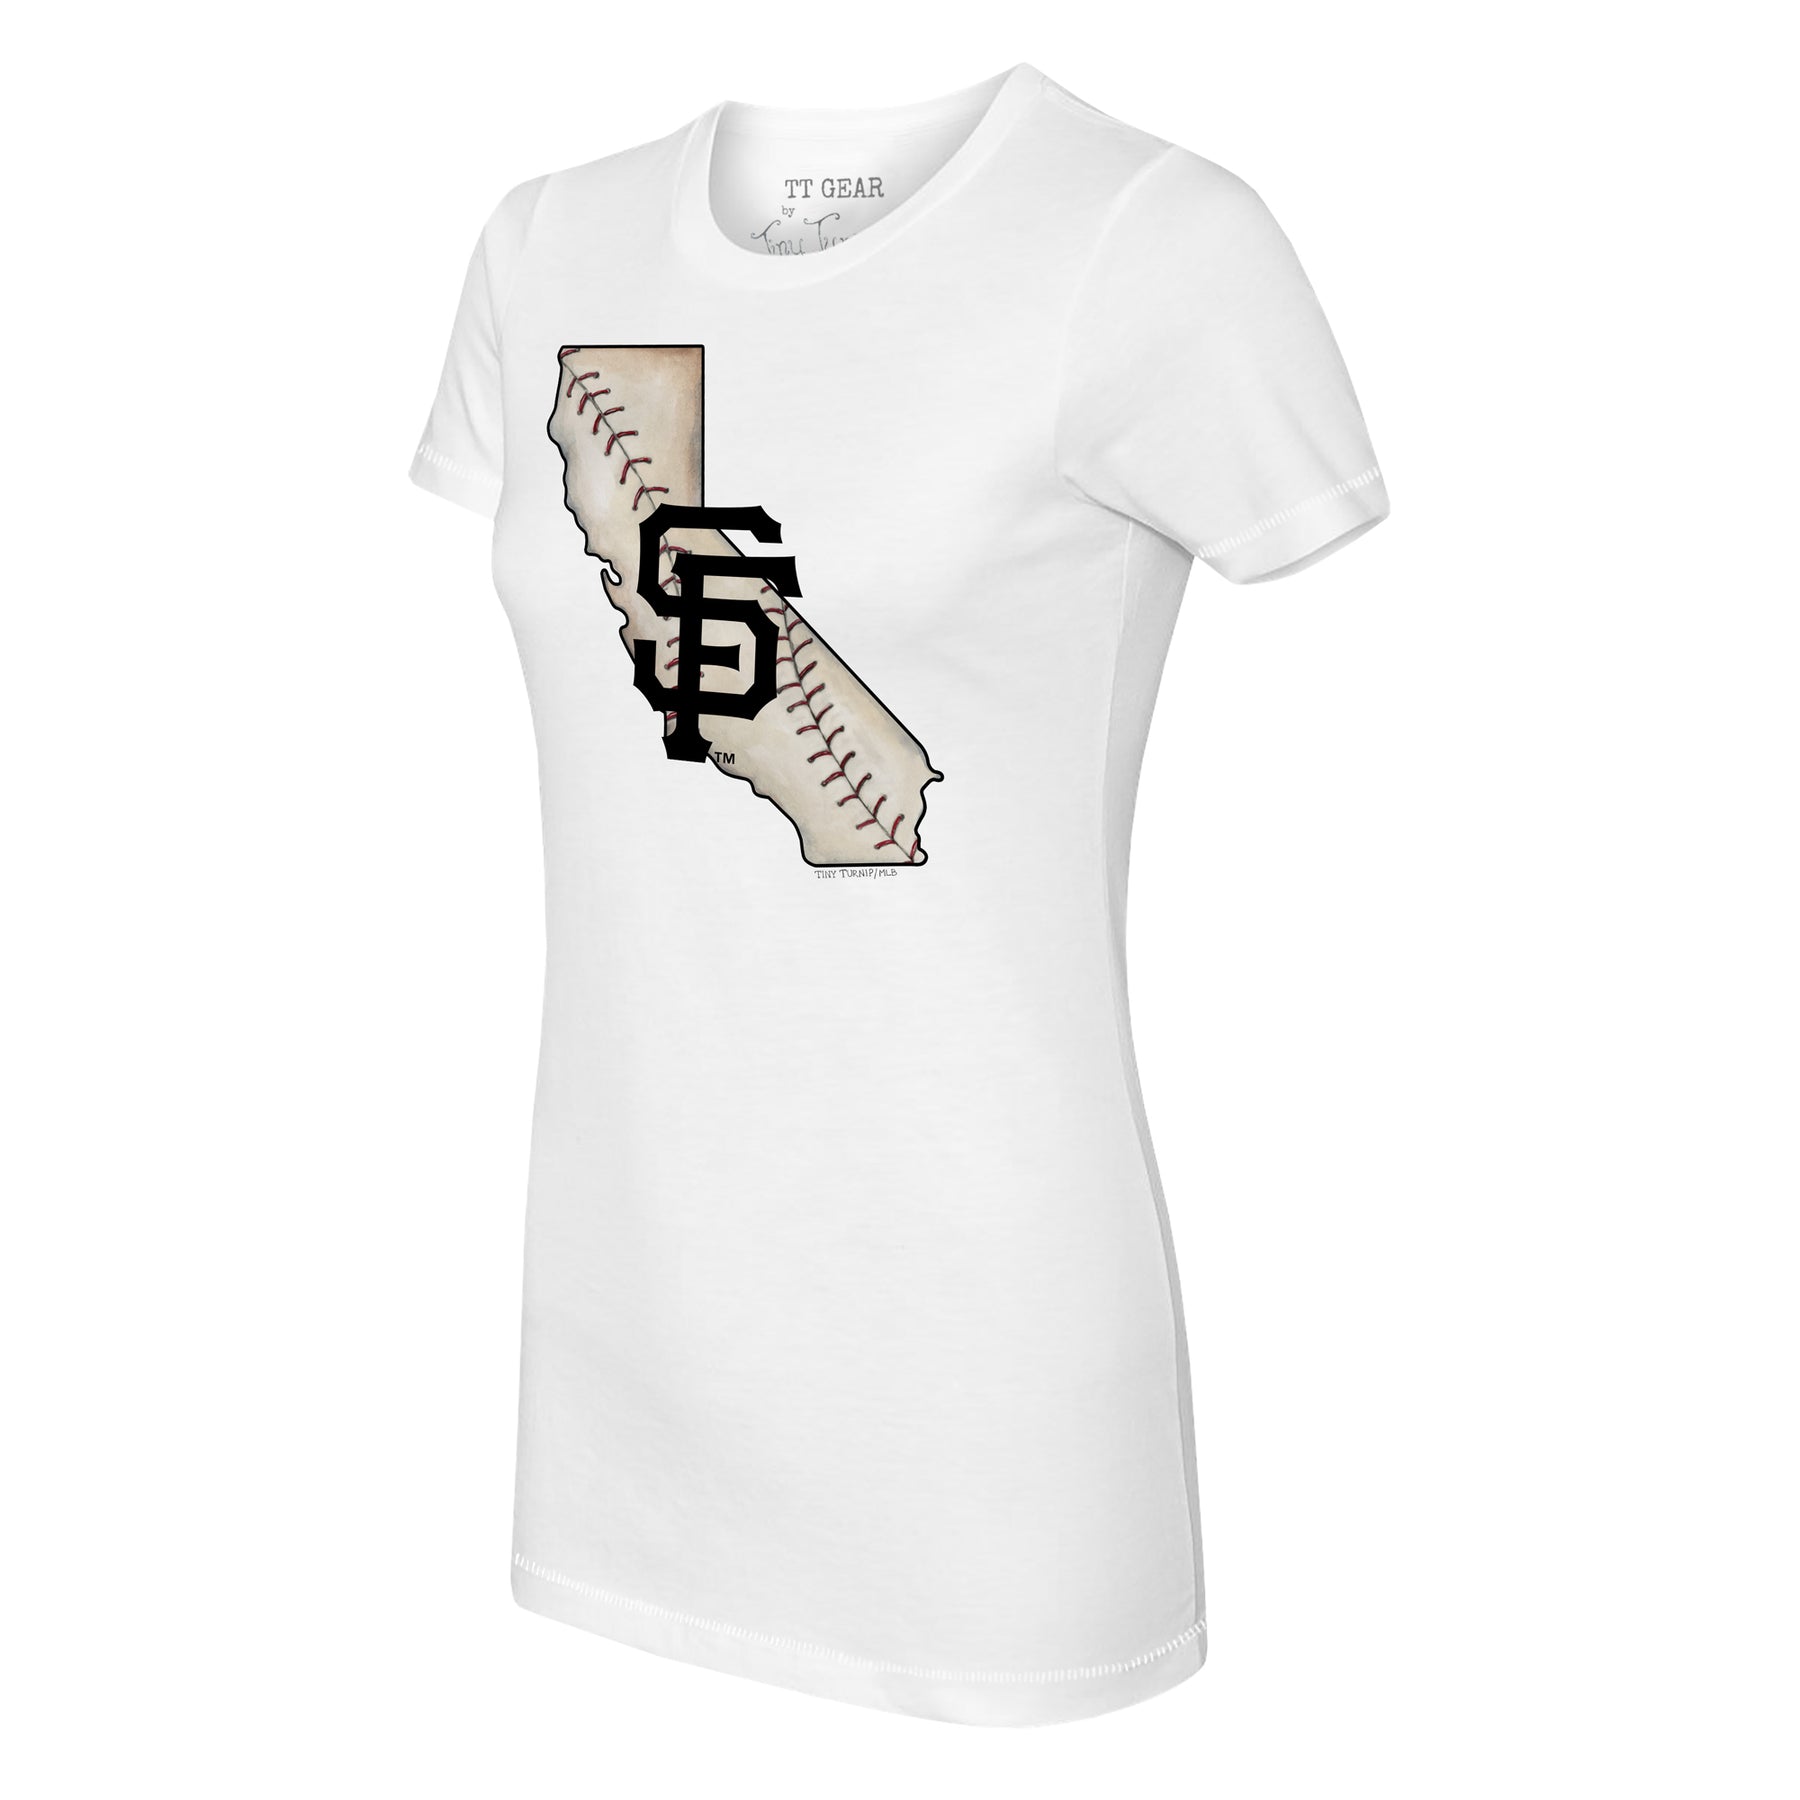 Tiny Turnip San Diego Padres Dirt Ball Tee Shirt Women's XS / White